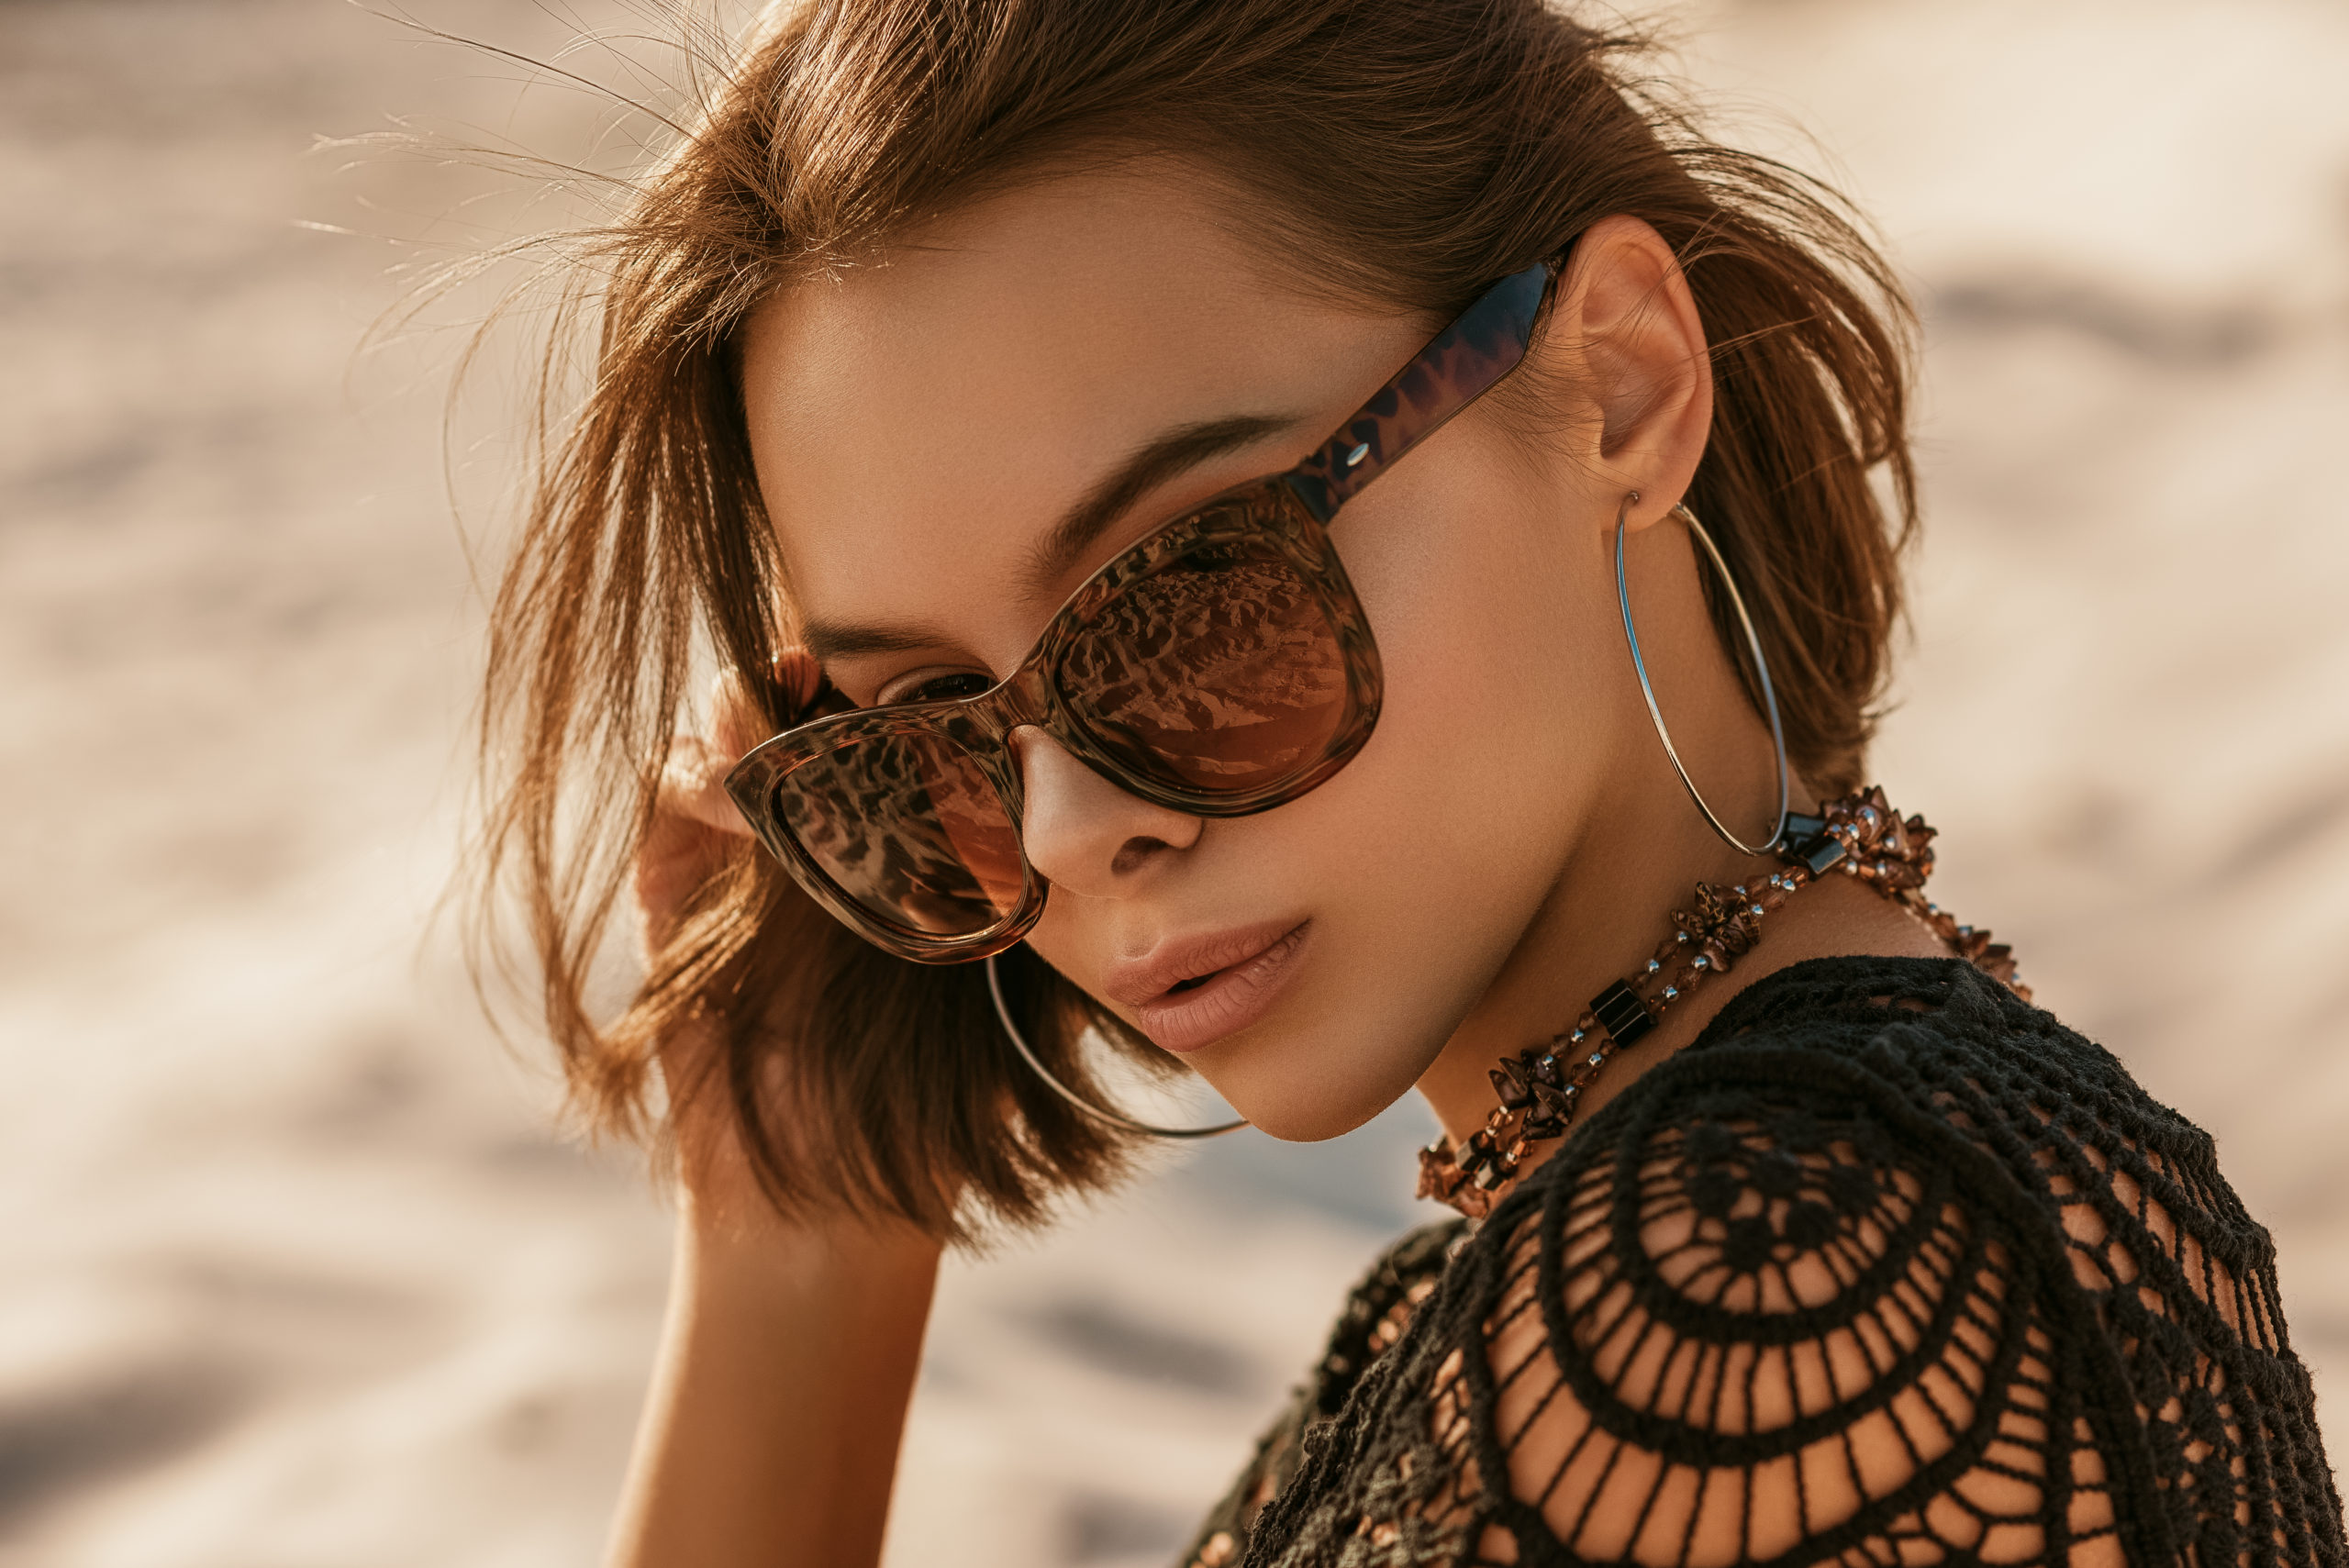 Image - woman in sunglasses: Victoria Chudinova/shutterstock 